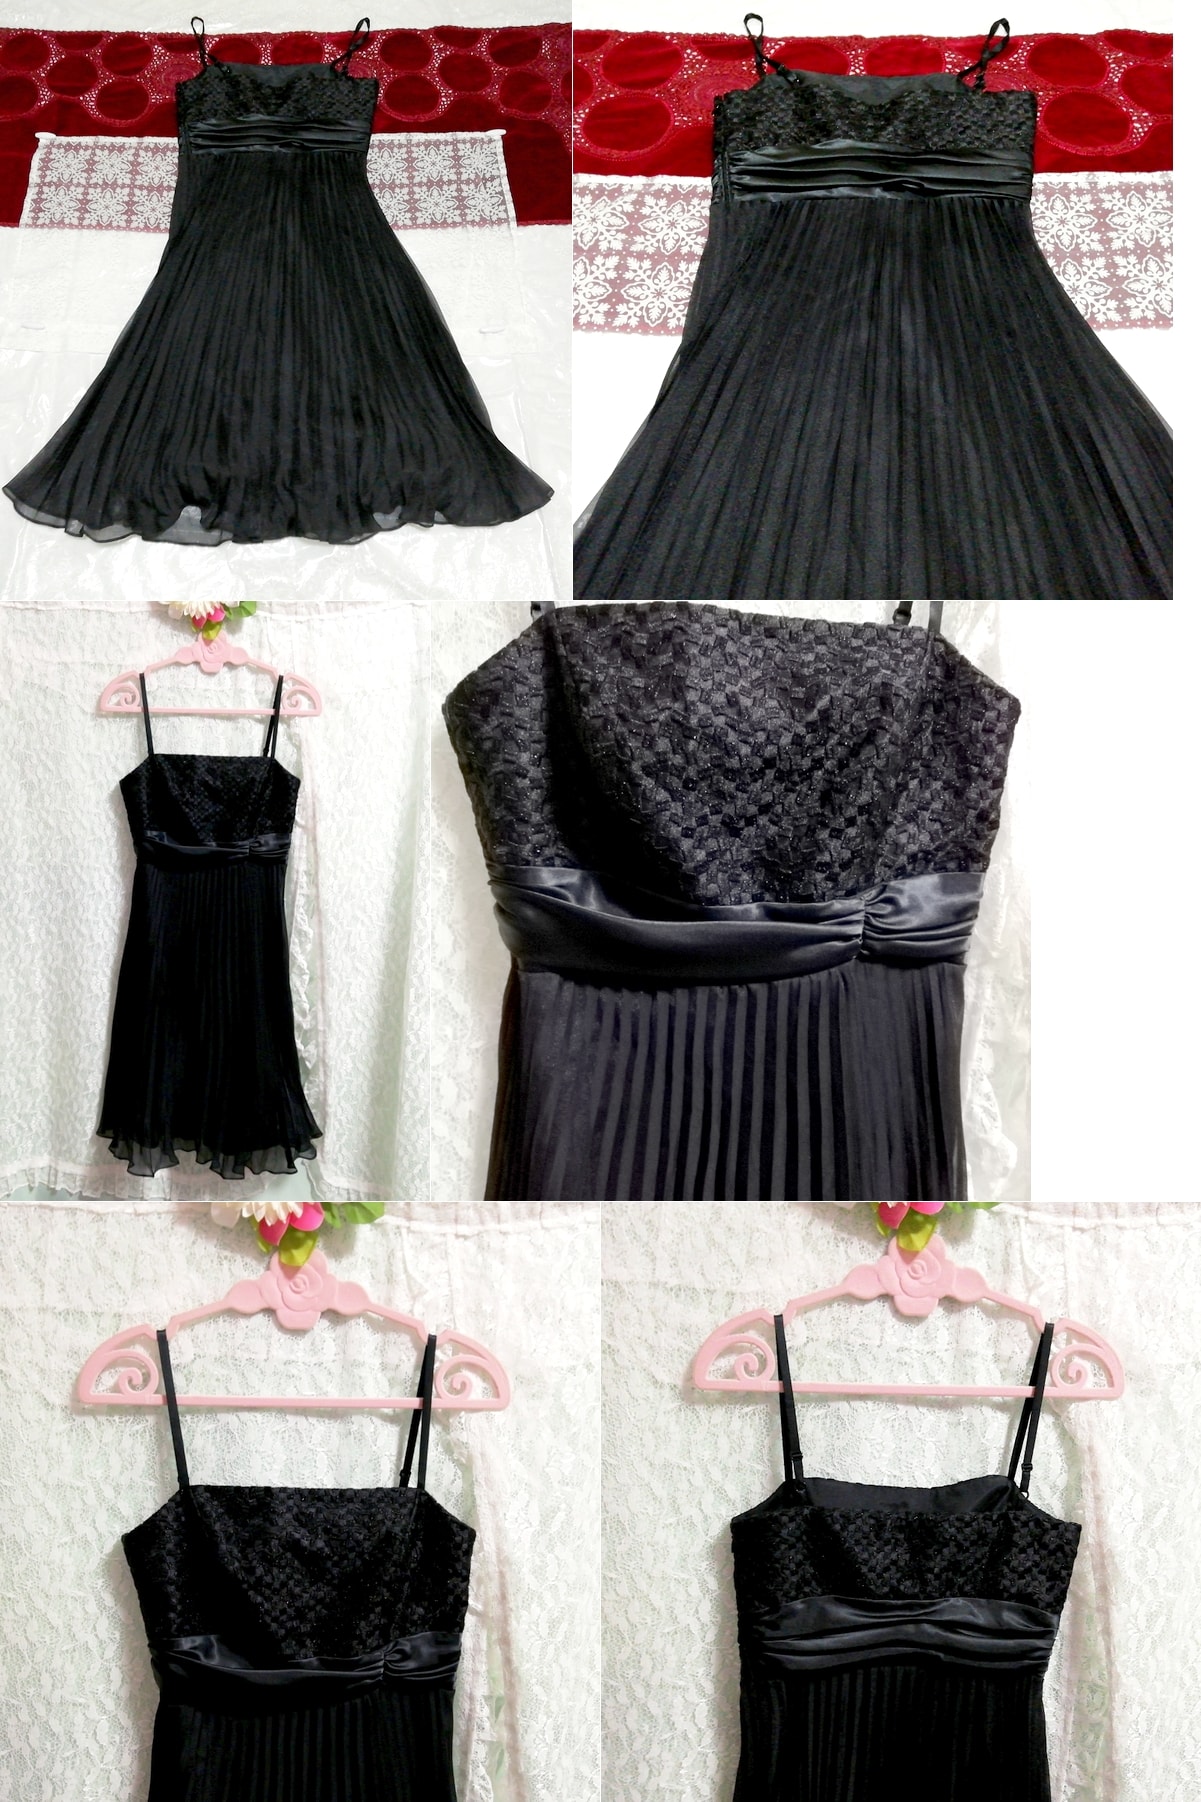 블랙 캐미솔 드레스 시폰 네글리제 나이트가운 드레스, 공식적인, 컬러 드레스, 검은색